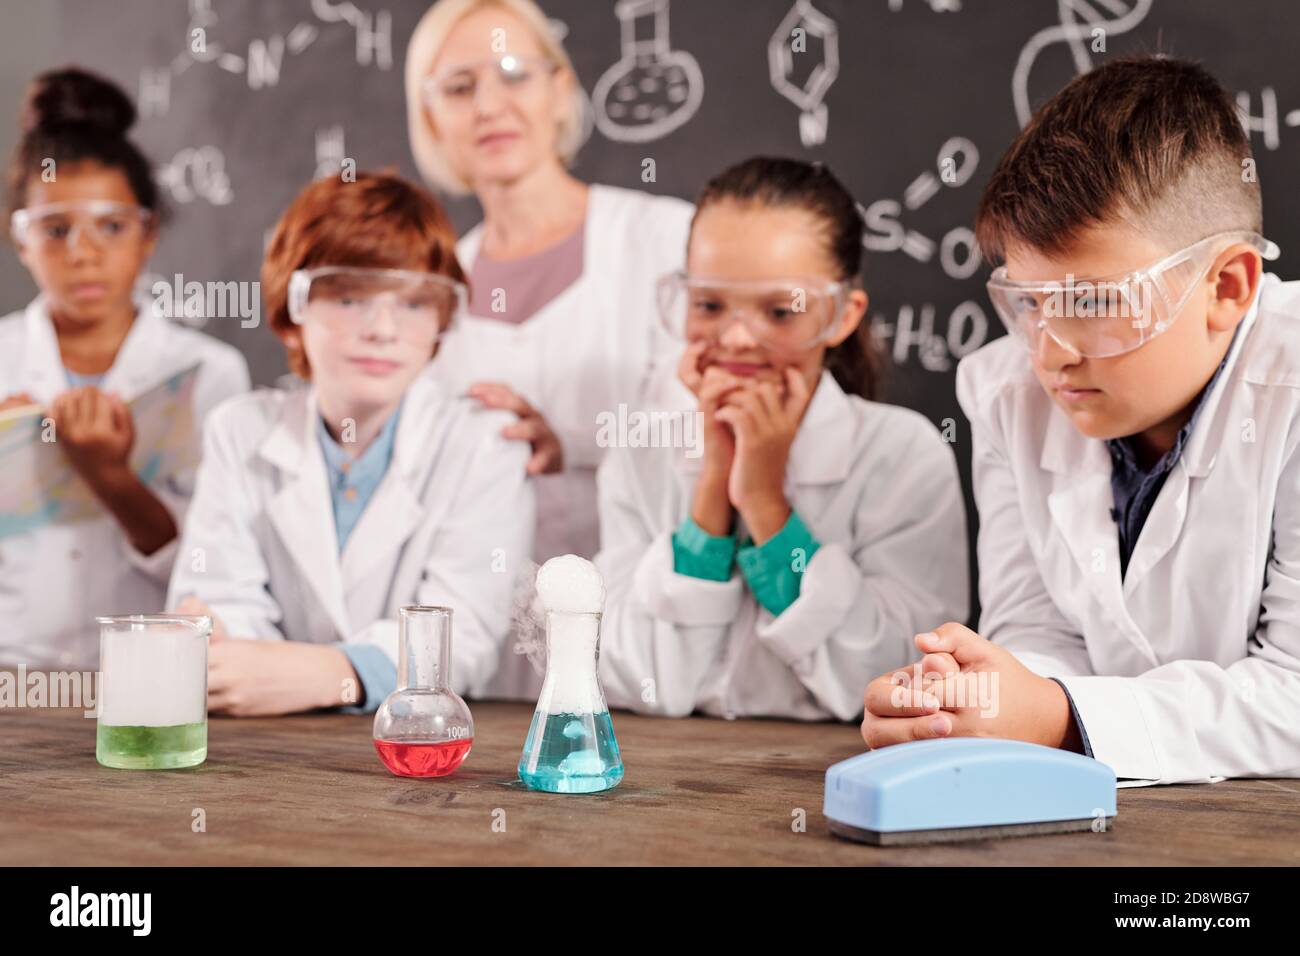 Les jeunes en Whitecavoine et lunettes de protection observant les réactions chimiques Banque D'Images